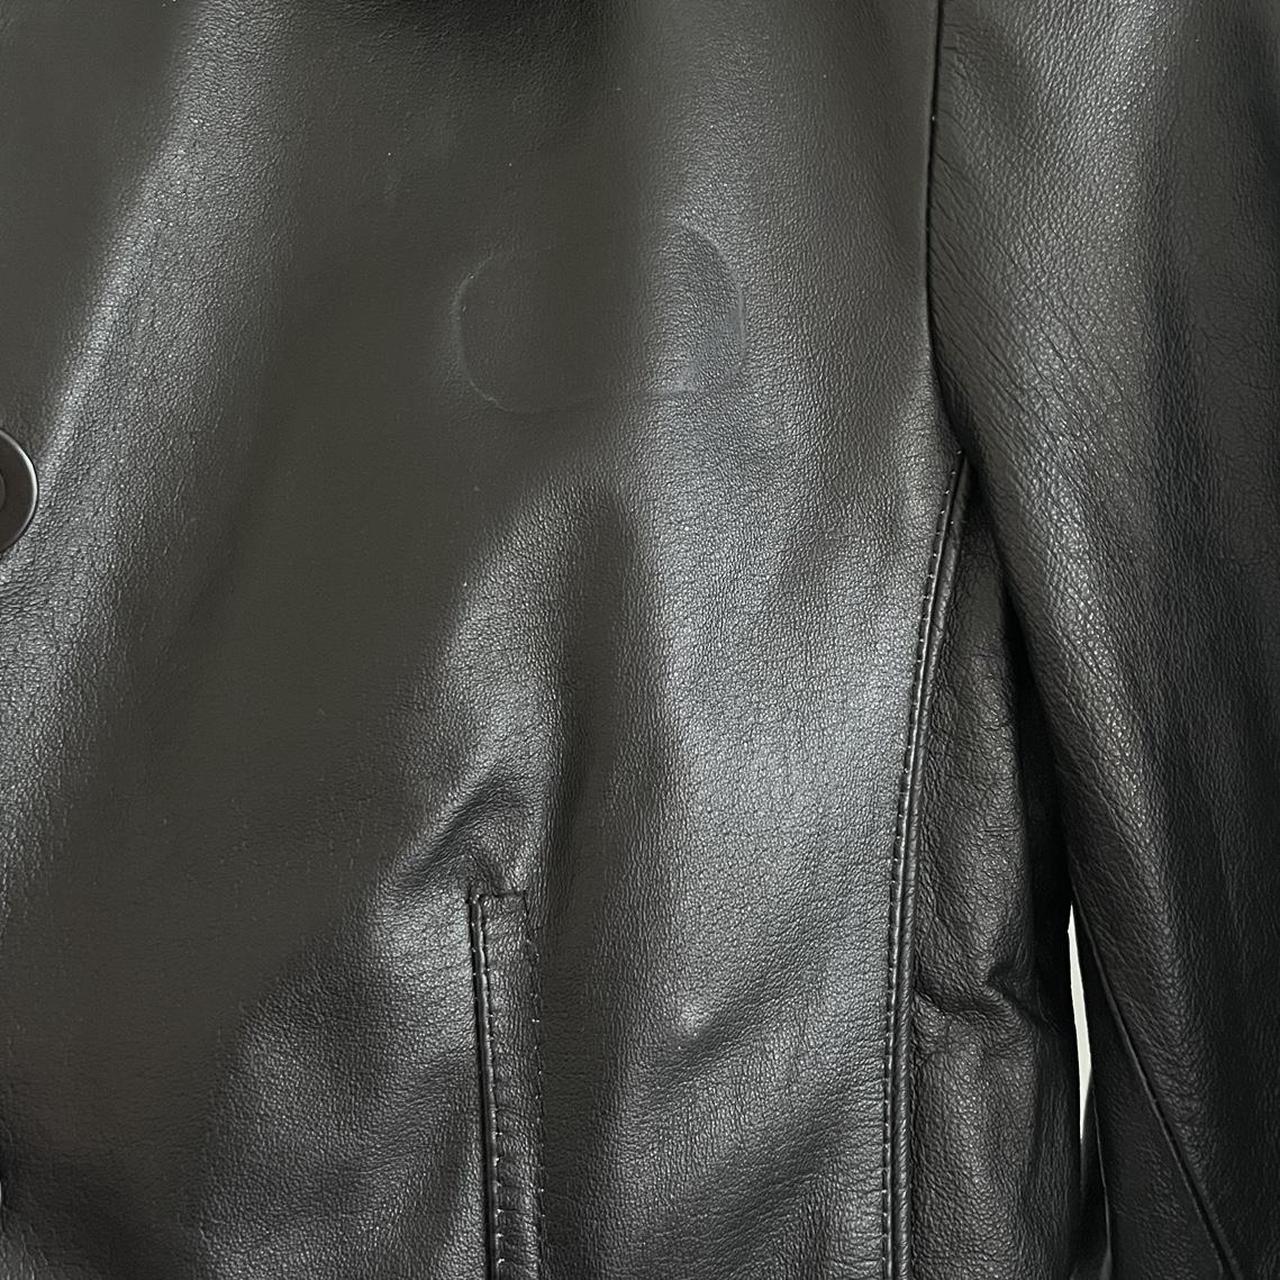 Vintage target black leather jacket Size 8 - fits... - Depop